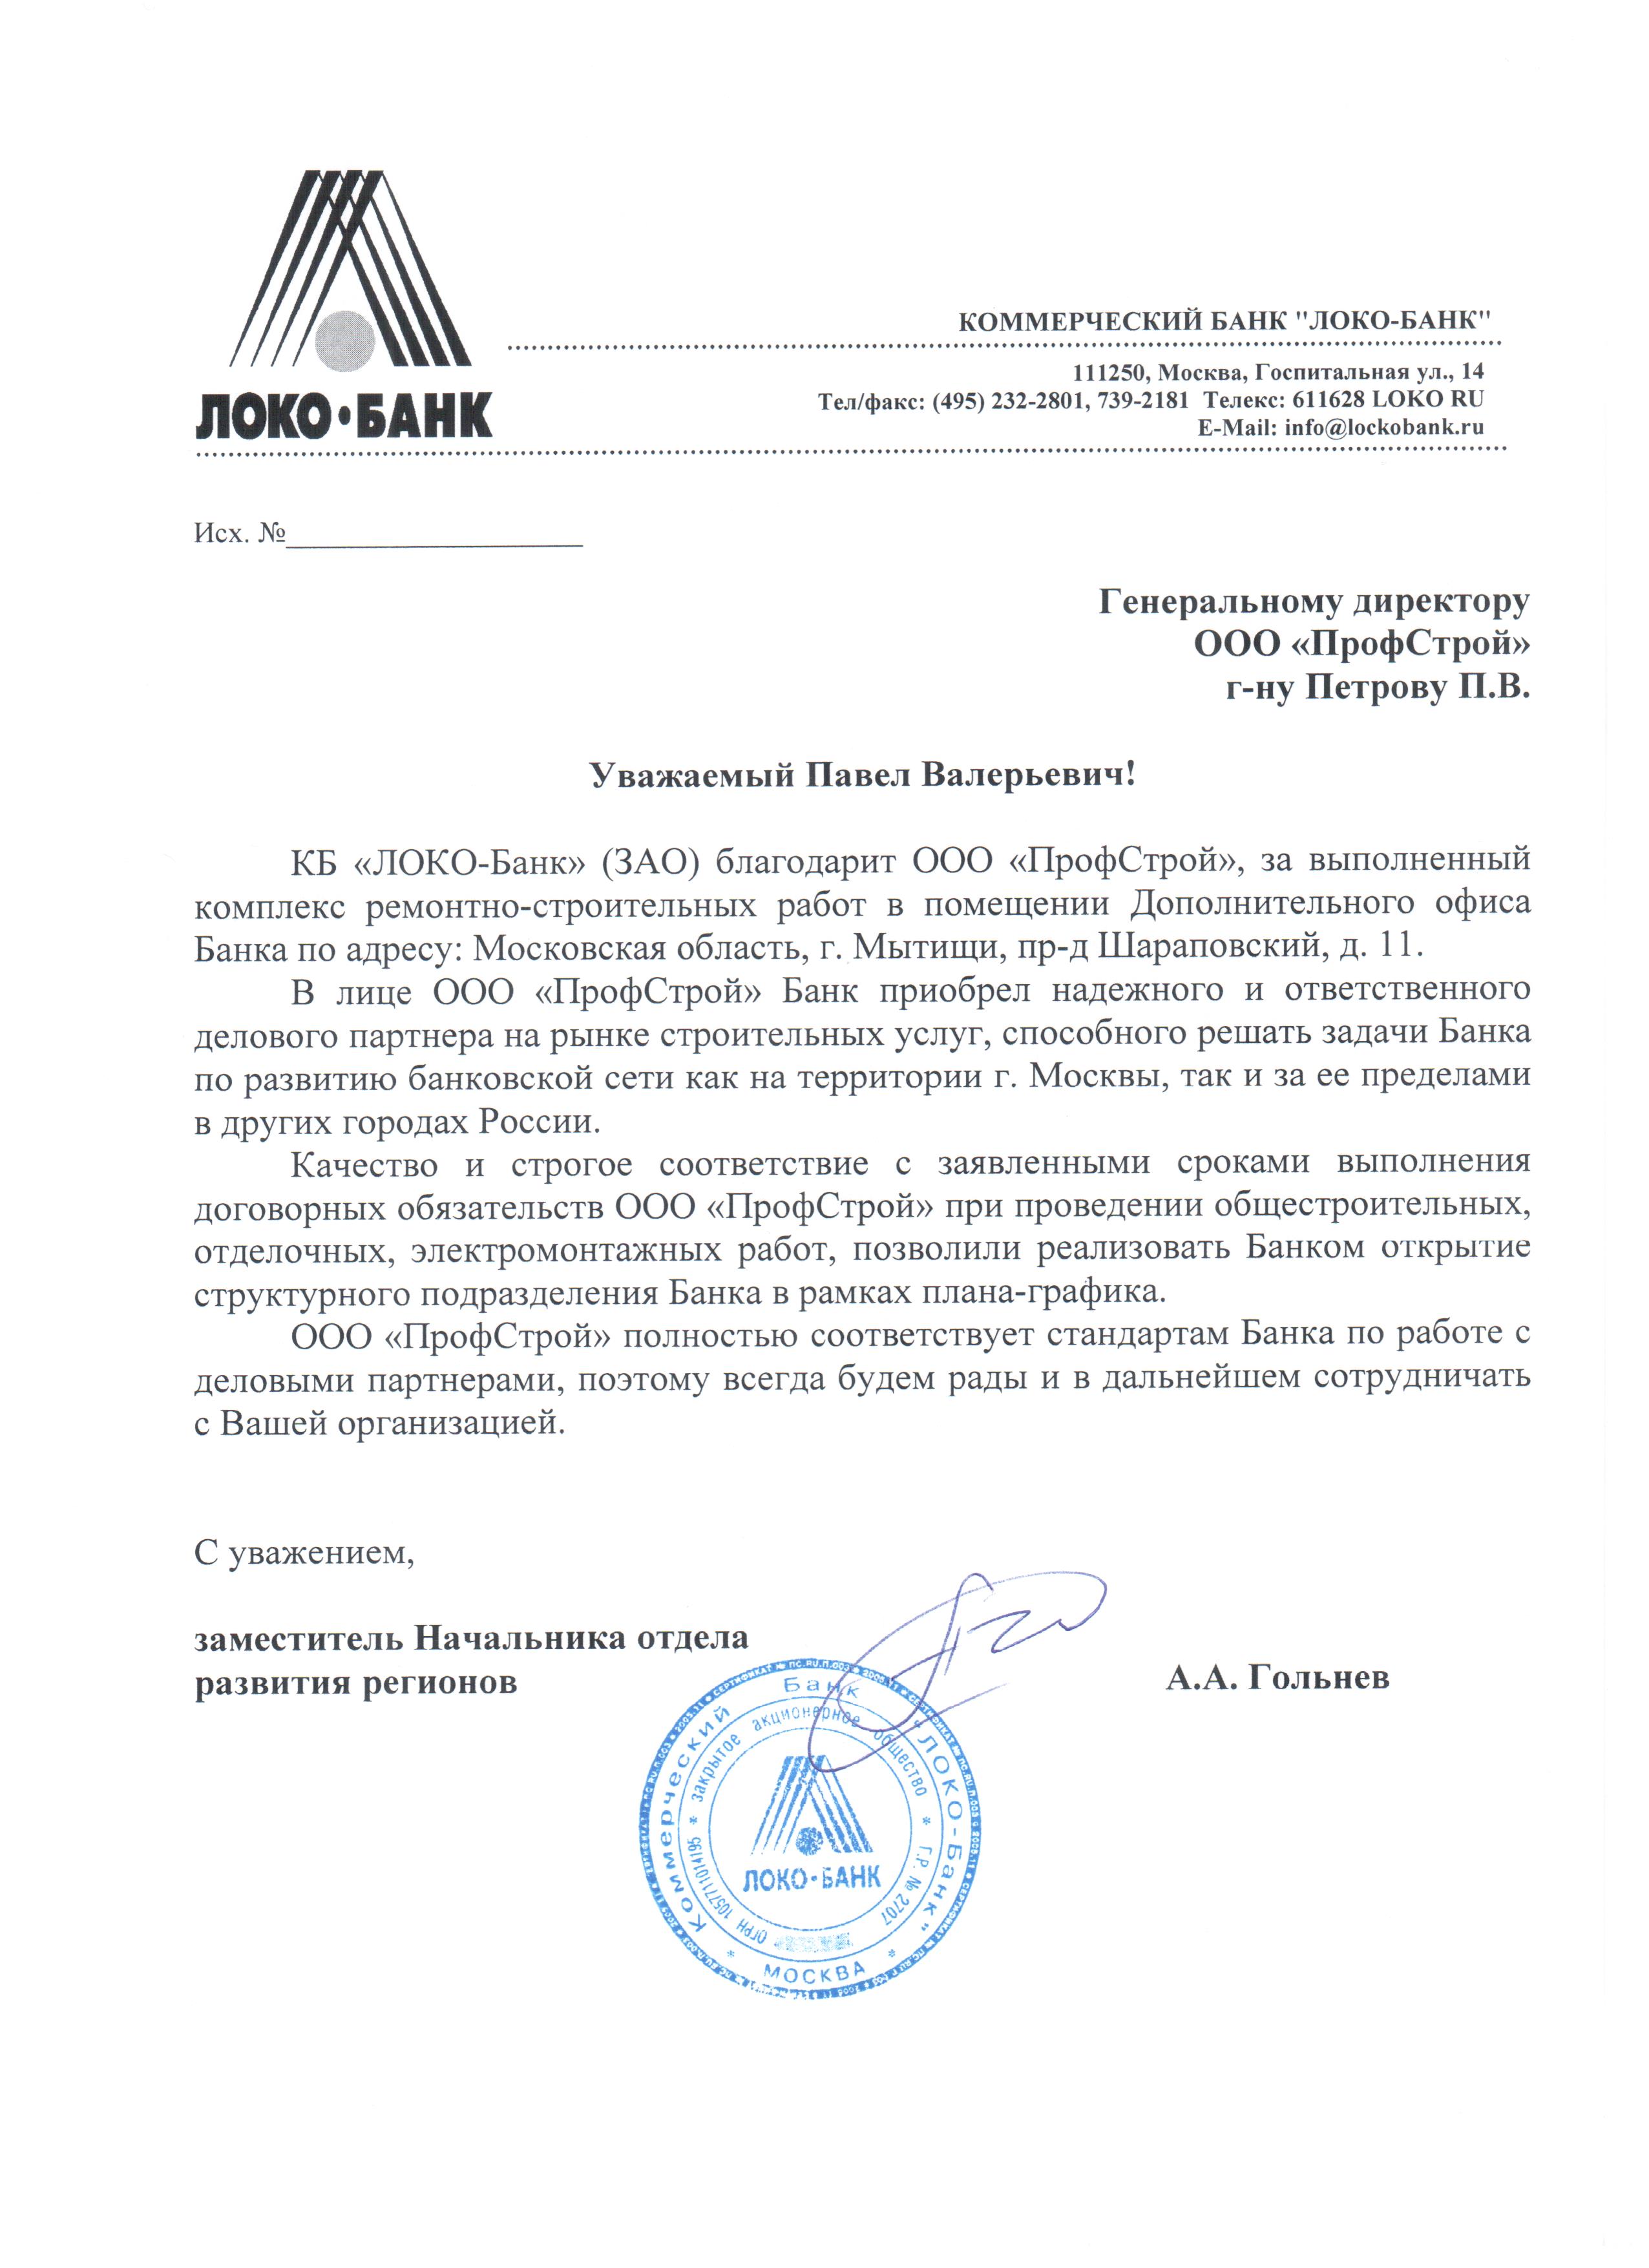 Отзыв о работе ООО «ПрофСтрой» от КБ «ЛОКО-Банк»